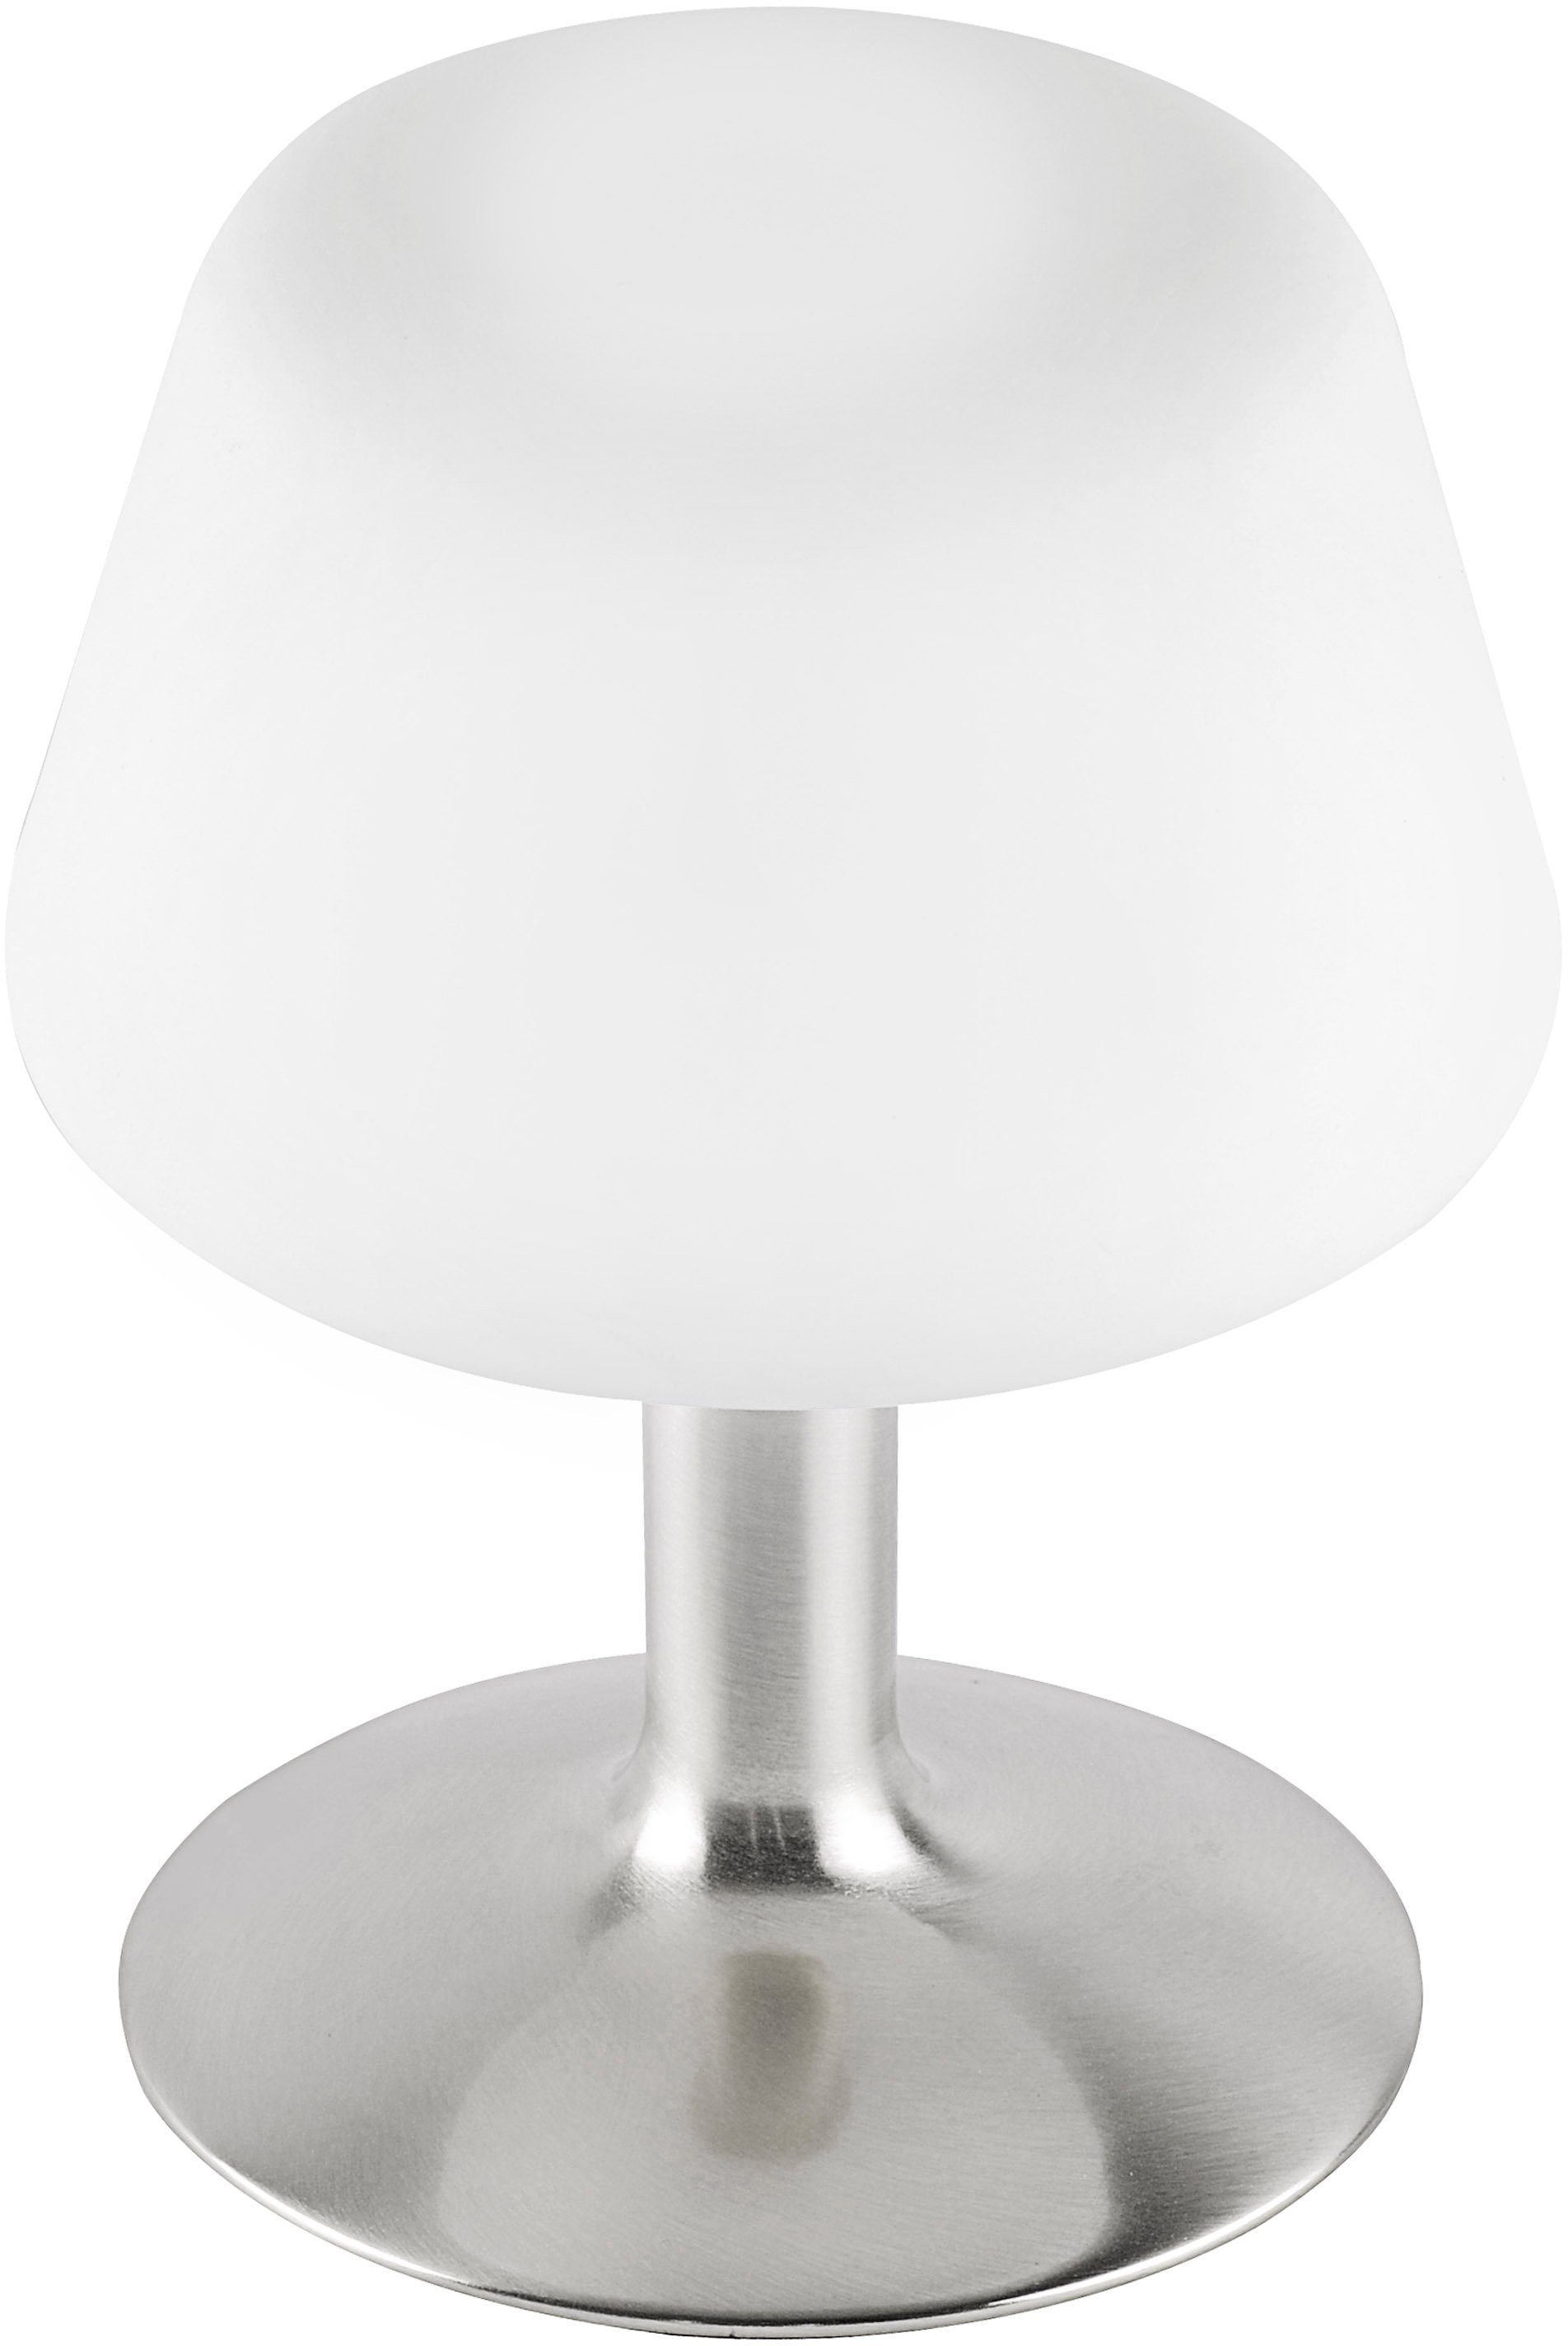 Paul Neuhaus LED Tischleuchte Till, wechselbar, Touchdimmer Dimmfunktion, Warmweiß, LED 3-Stufen